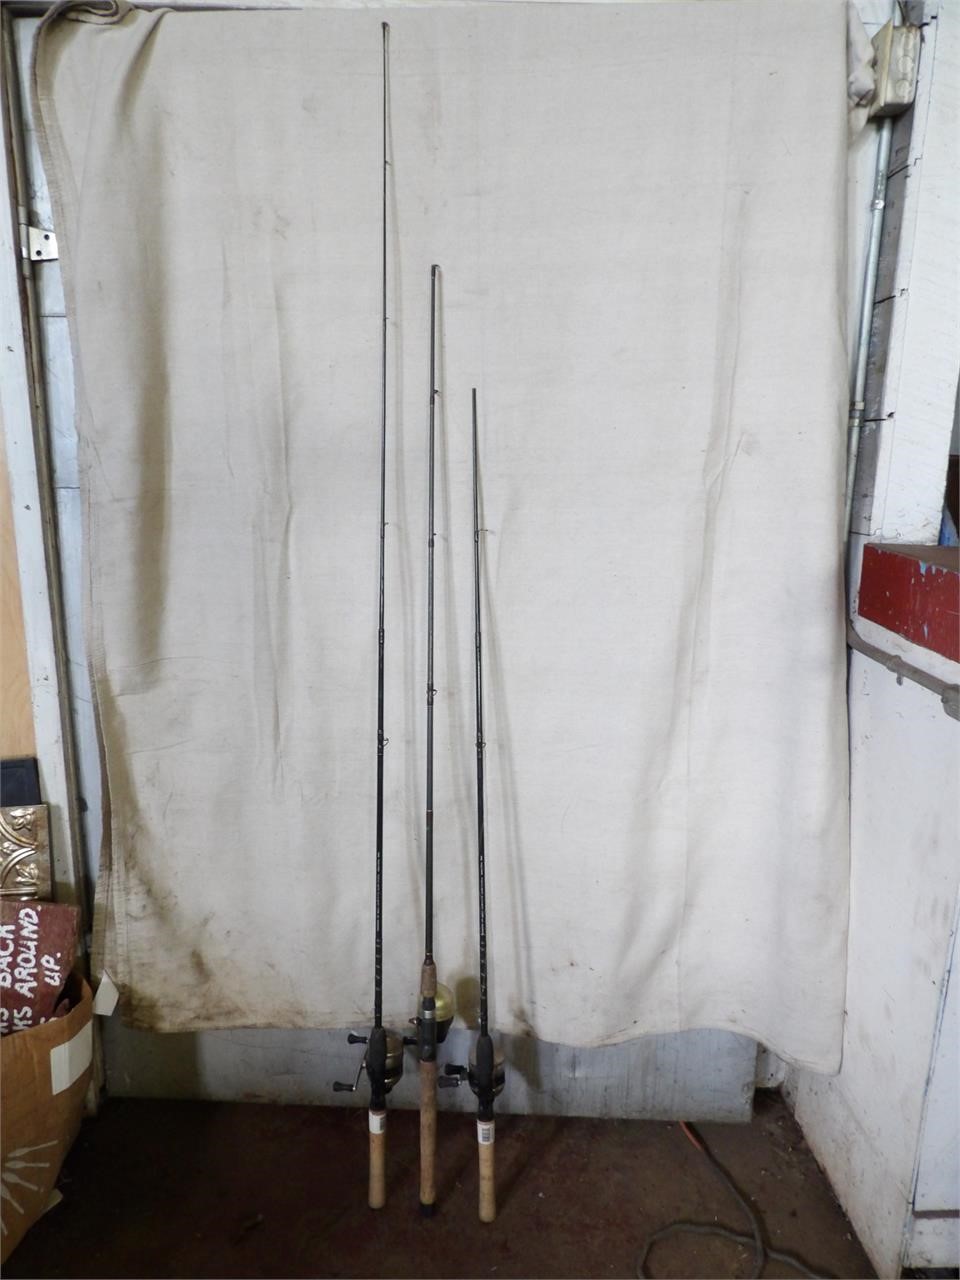 3 Fishing Rods - 1 Needs Repair